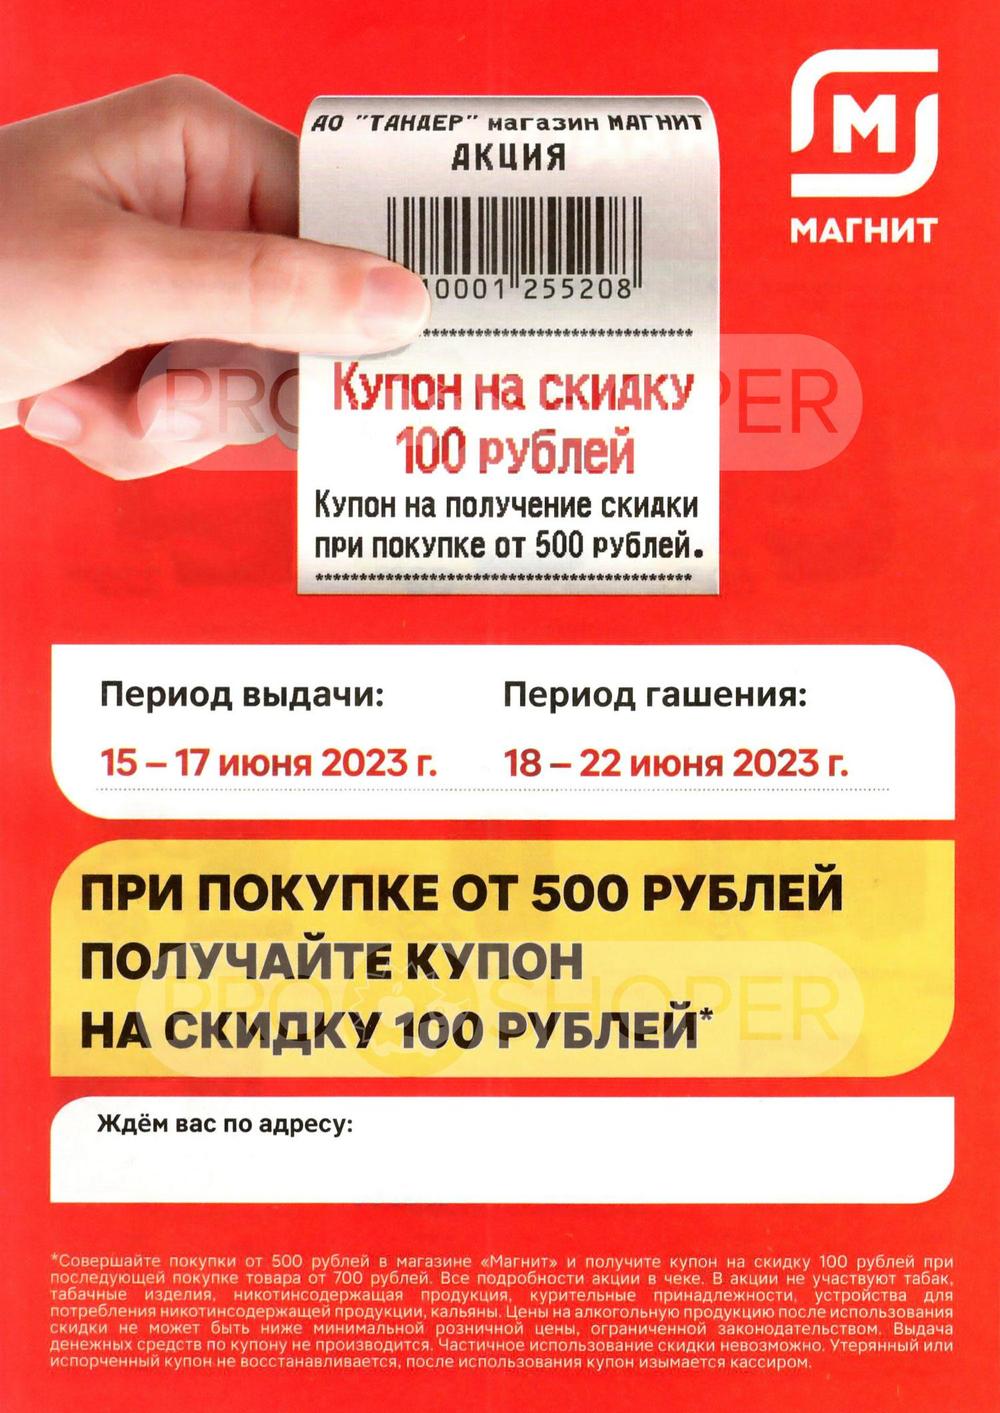 Сезонный каталог акций «Цена - что надо!» в Магните у дома с 1 июня 2023 -  Балашиха (Москва)